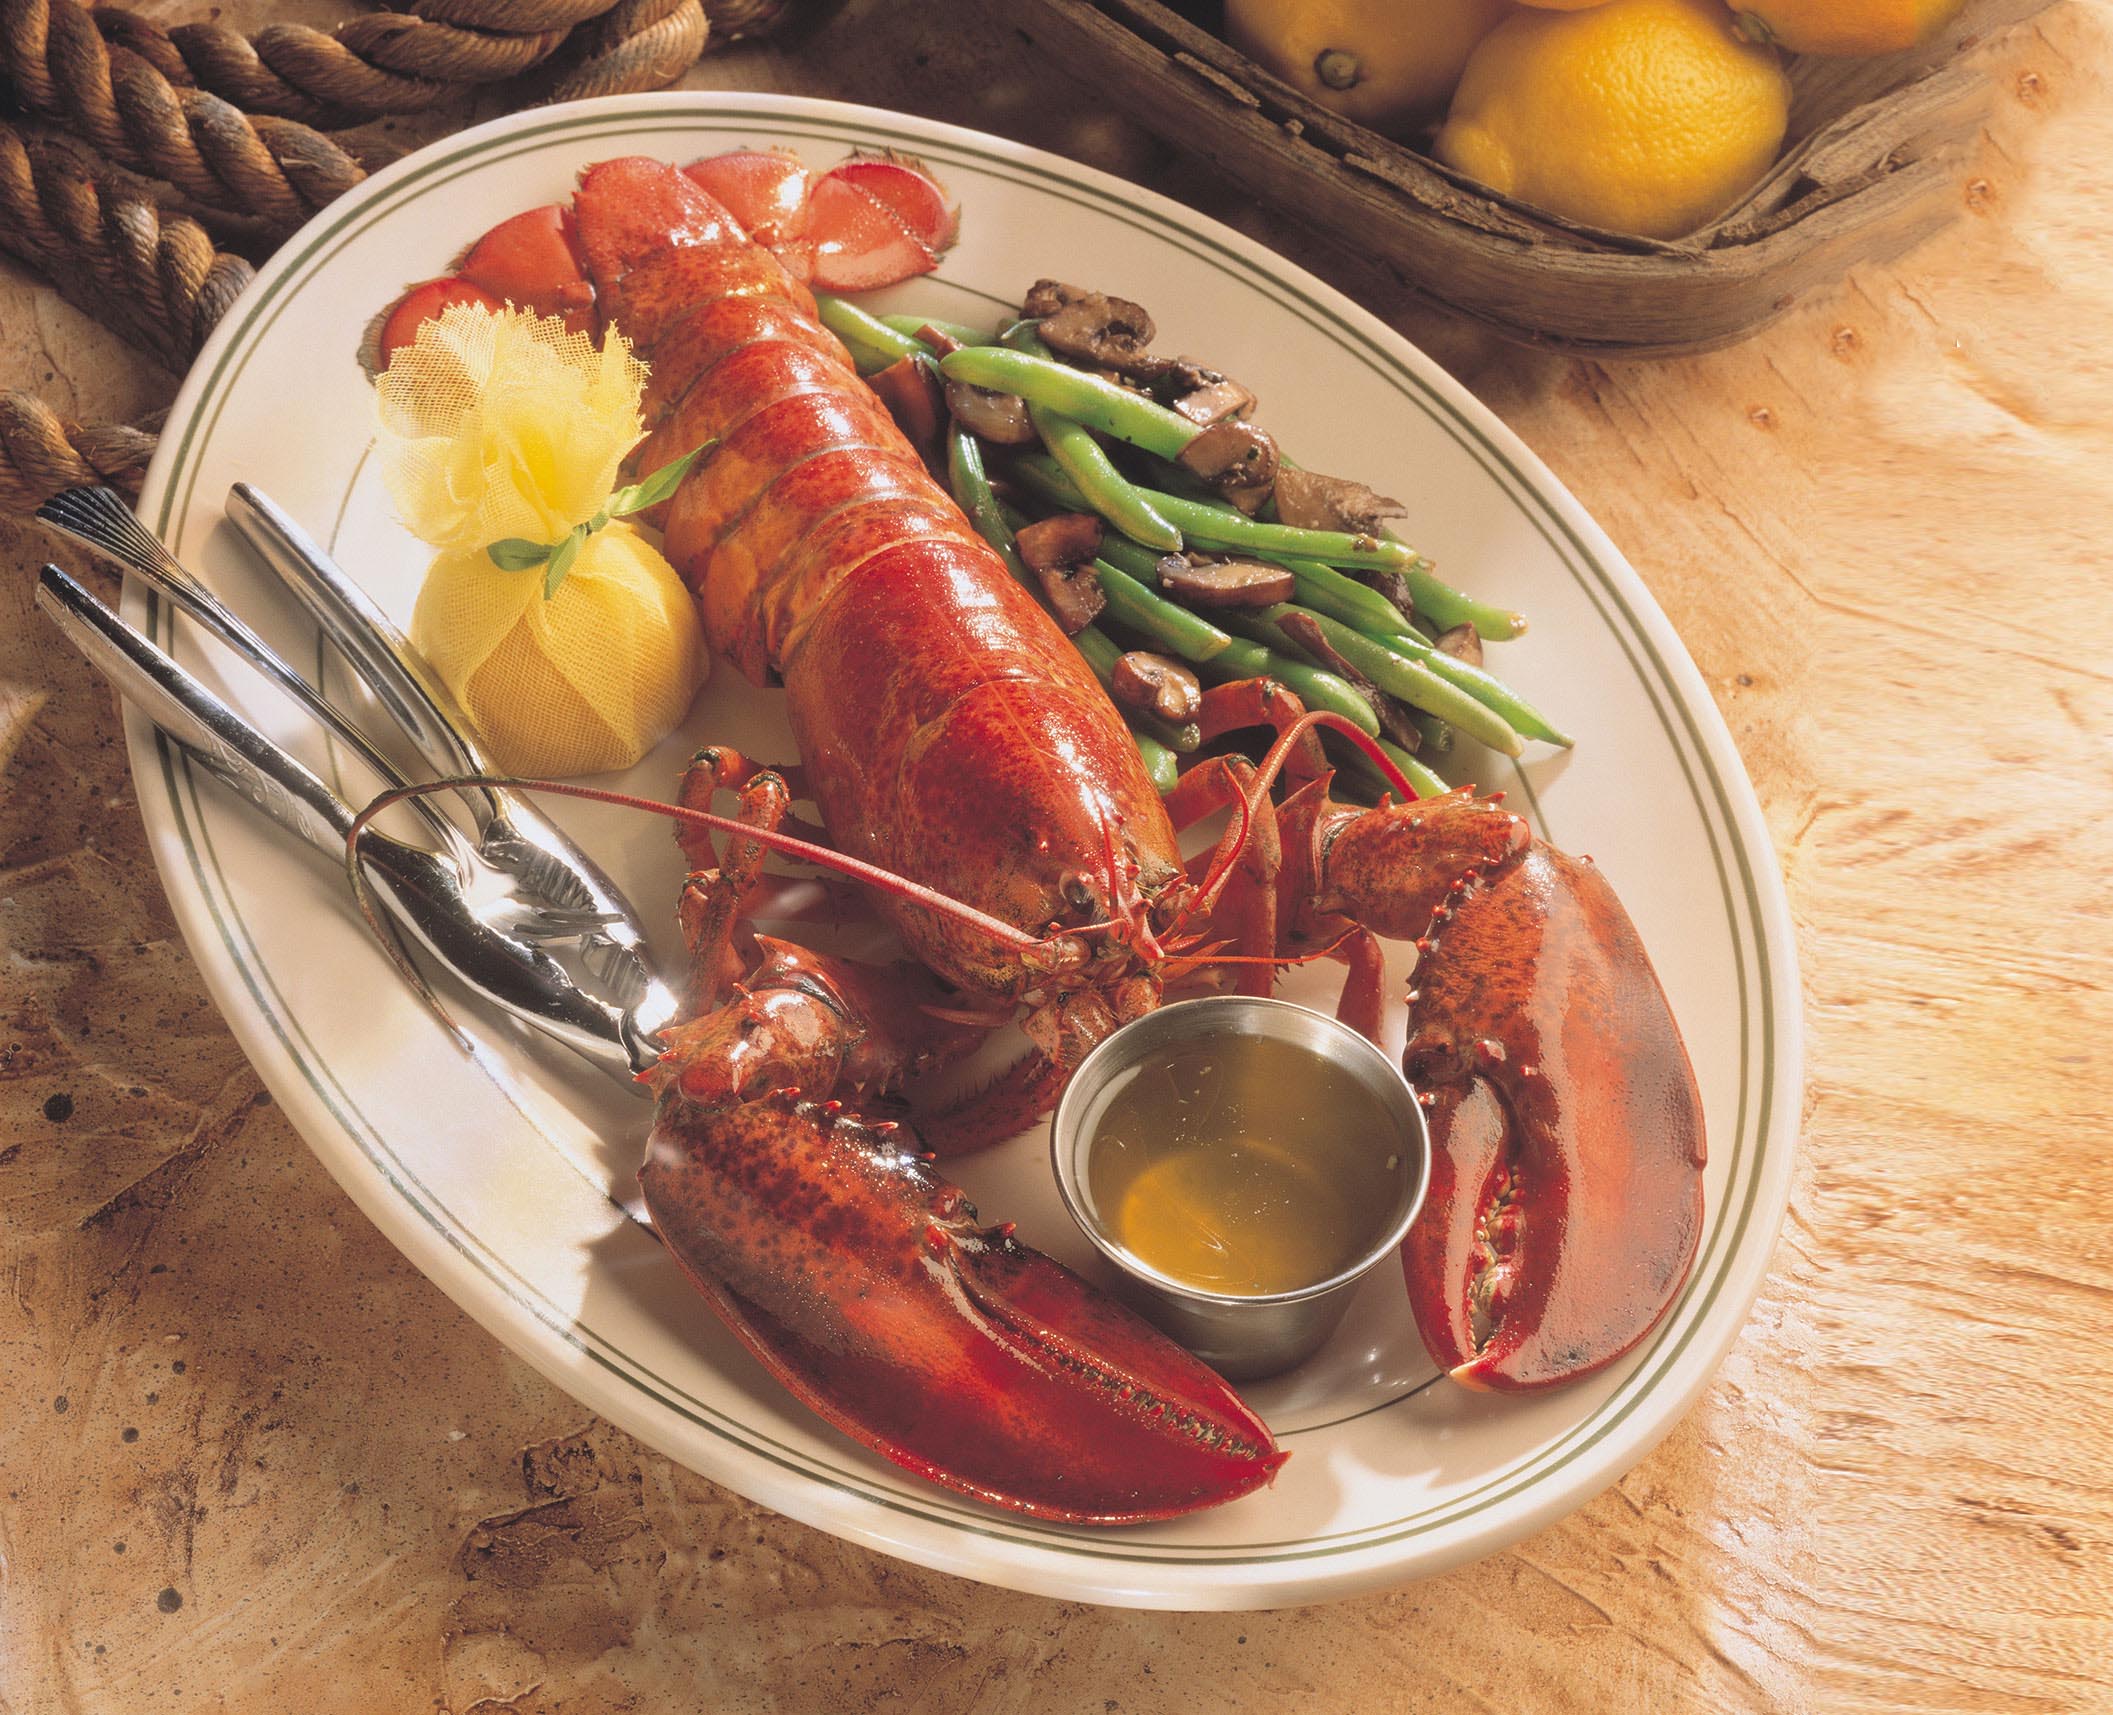 Lobster dish at Ocean Prime